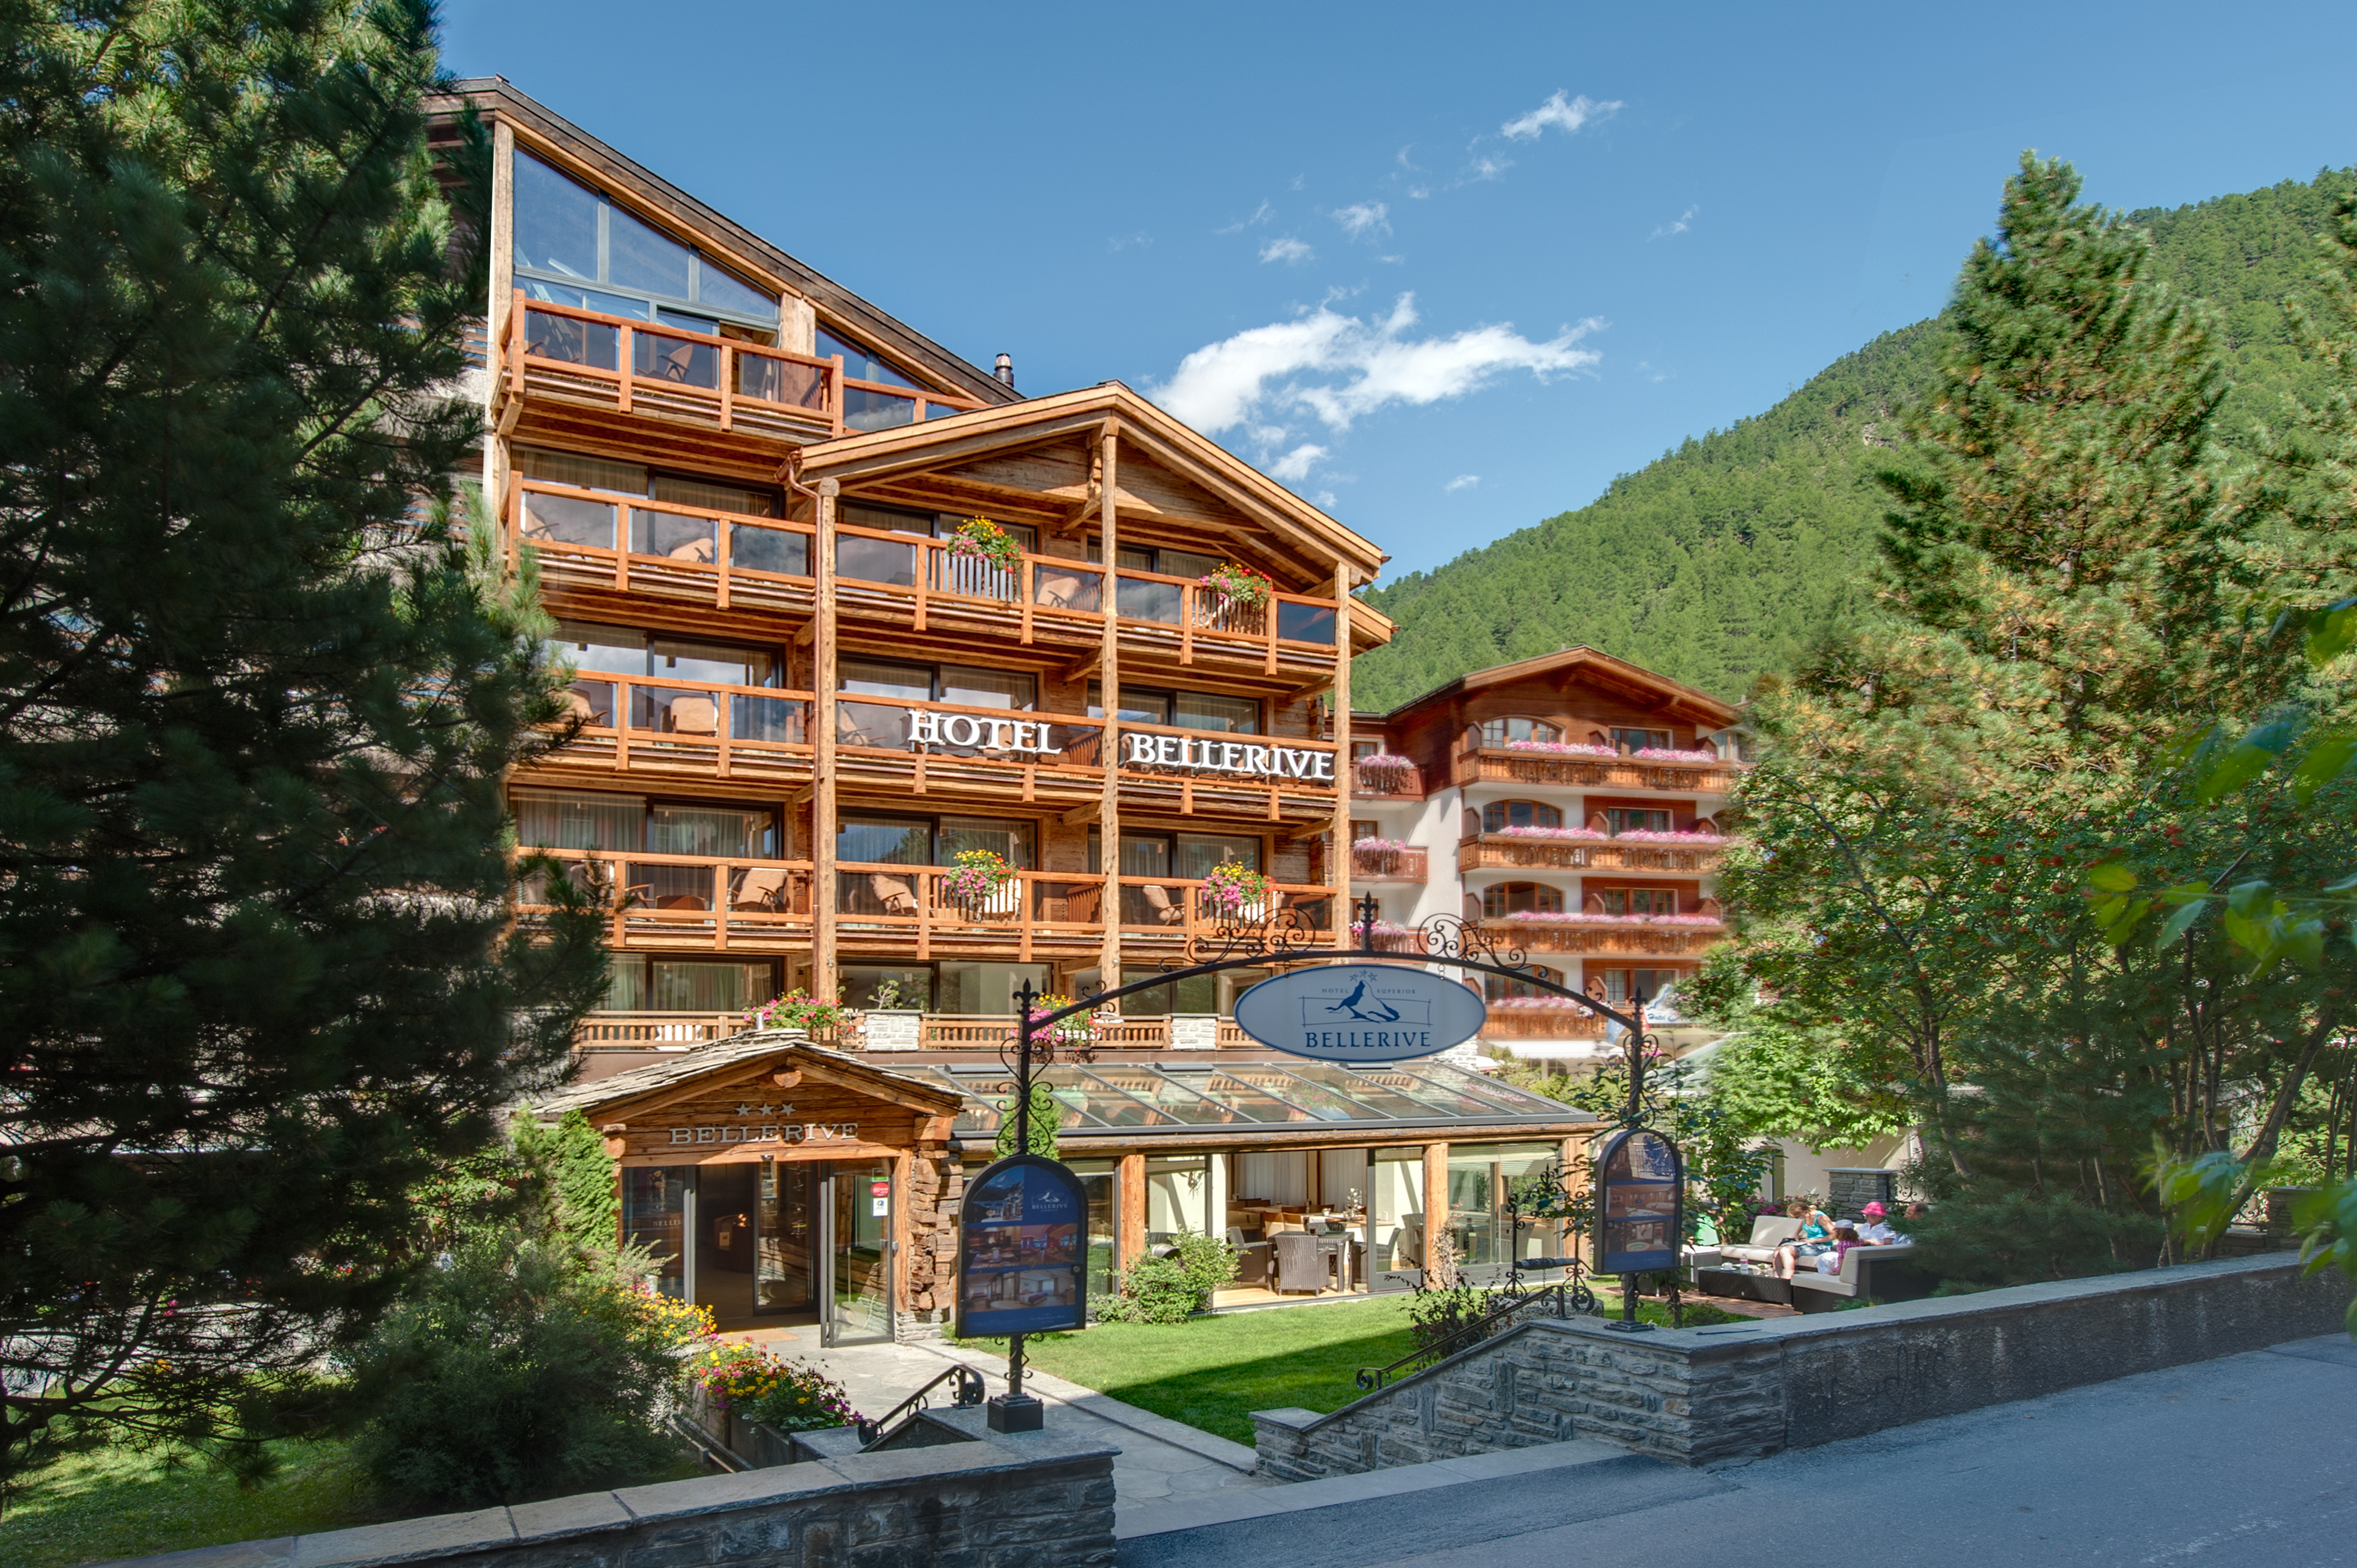 Bon Cadeau Hôtel Bellerive, Zermatt